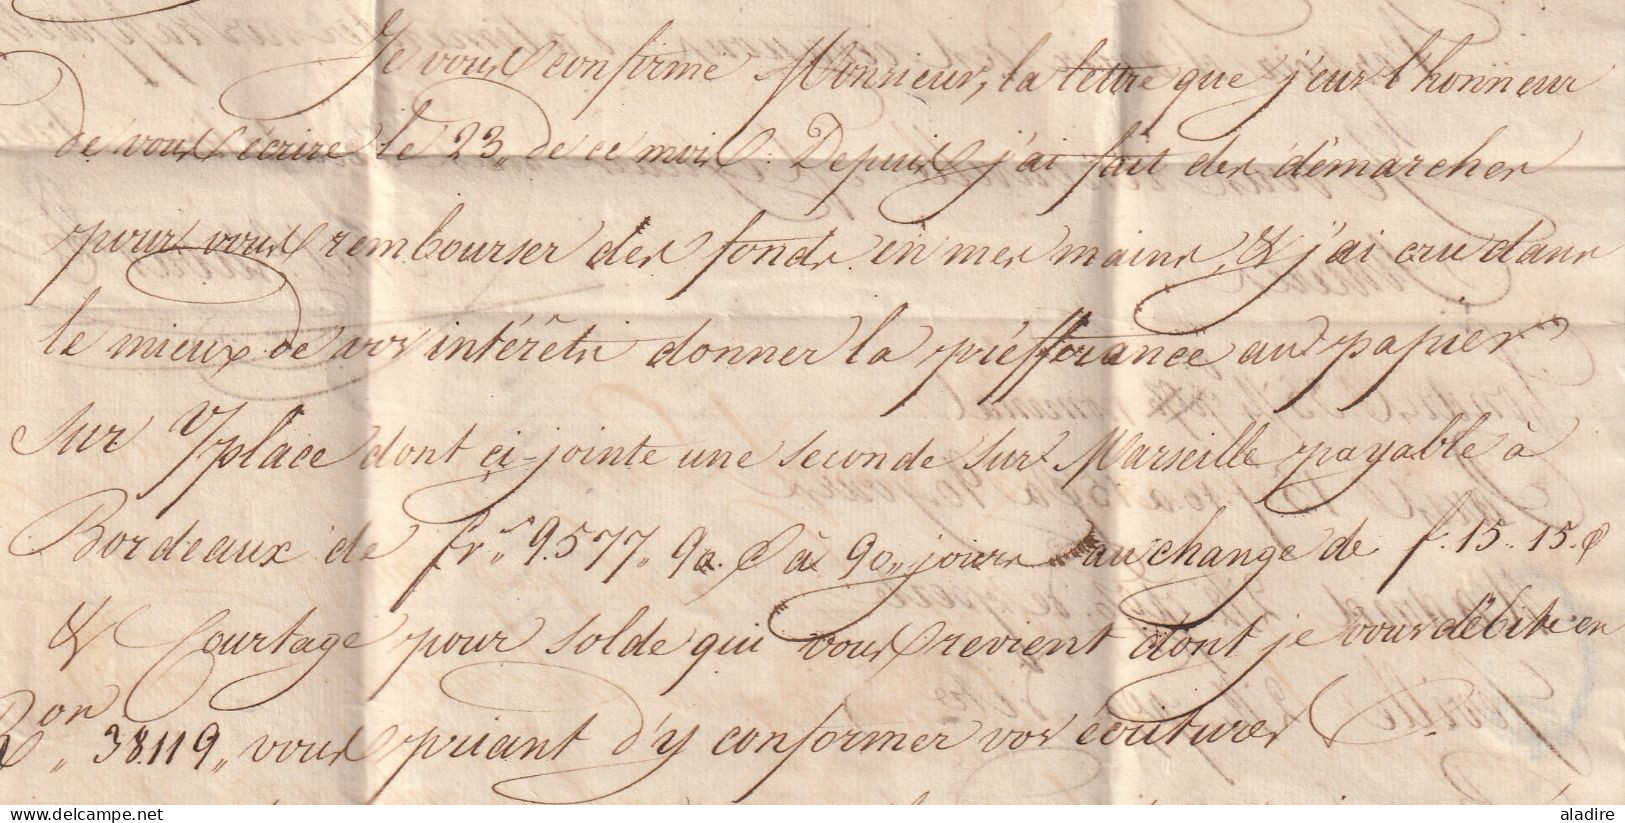 1827 - lettre en français de SANTANDER, Espagne vers BORDEAUX, France - entrée par Bayonne - taxe 8